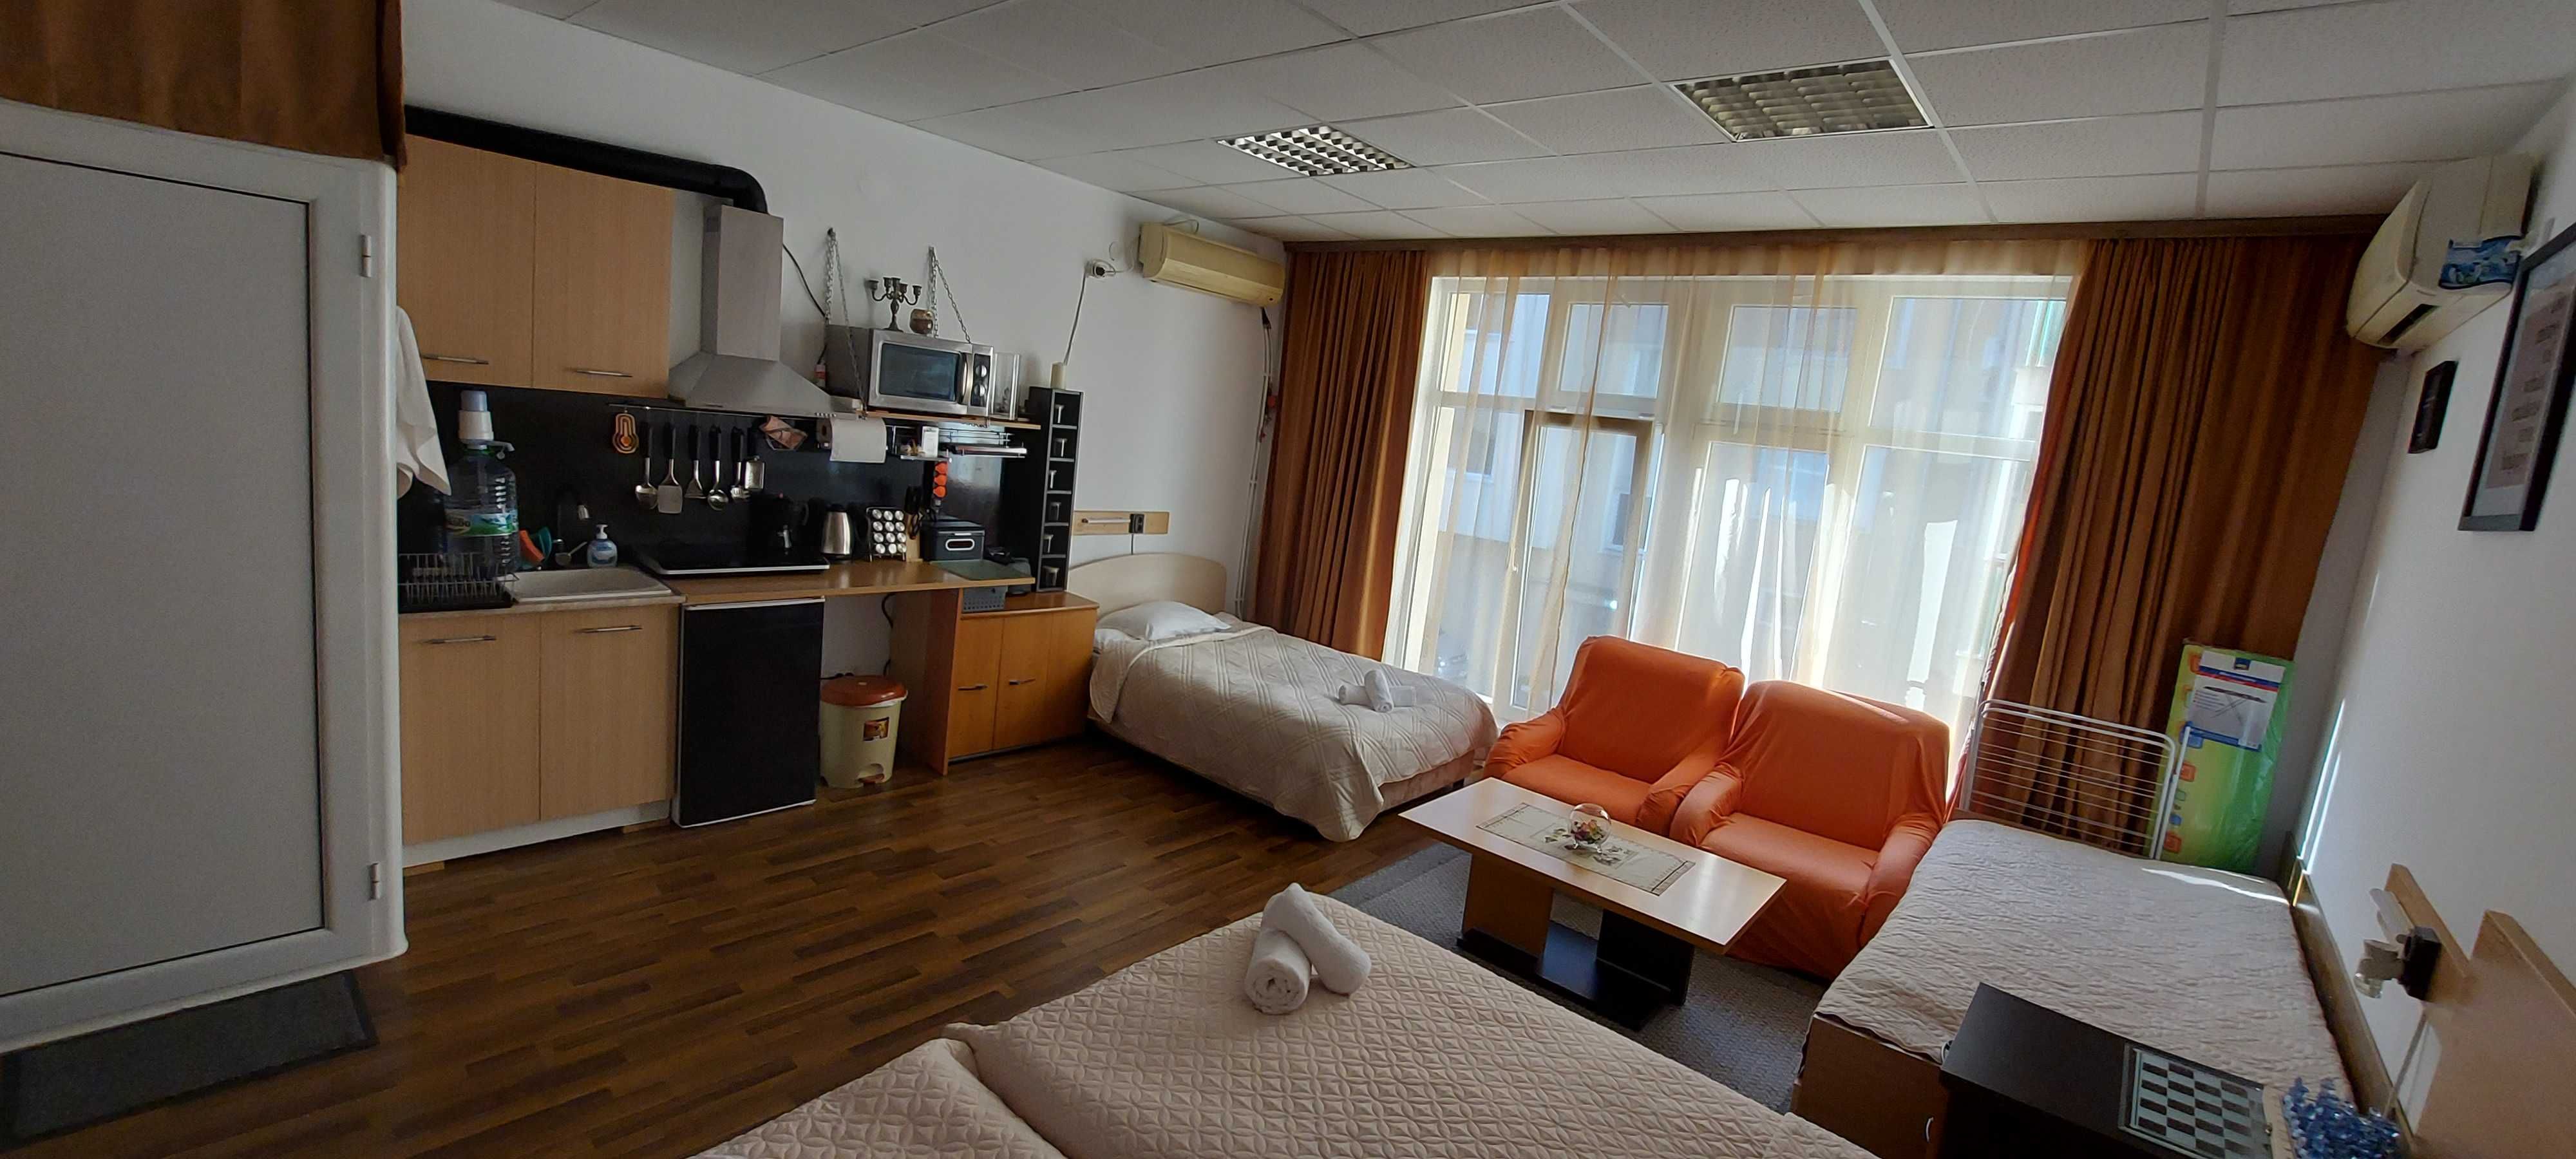 Нощувки в Нова Загора (къща за гости, стаи за гости и апартамент)